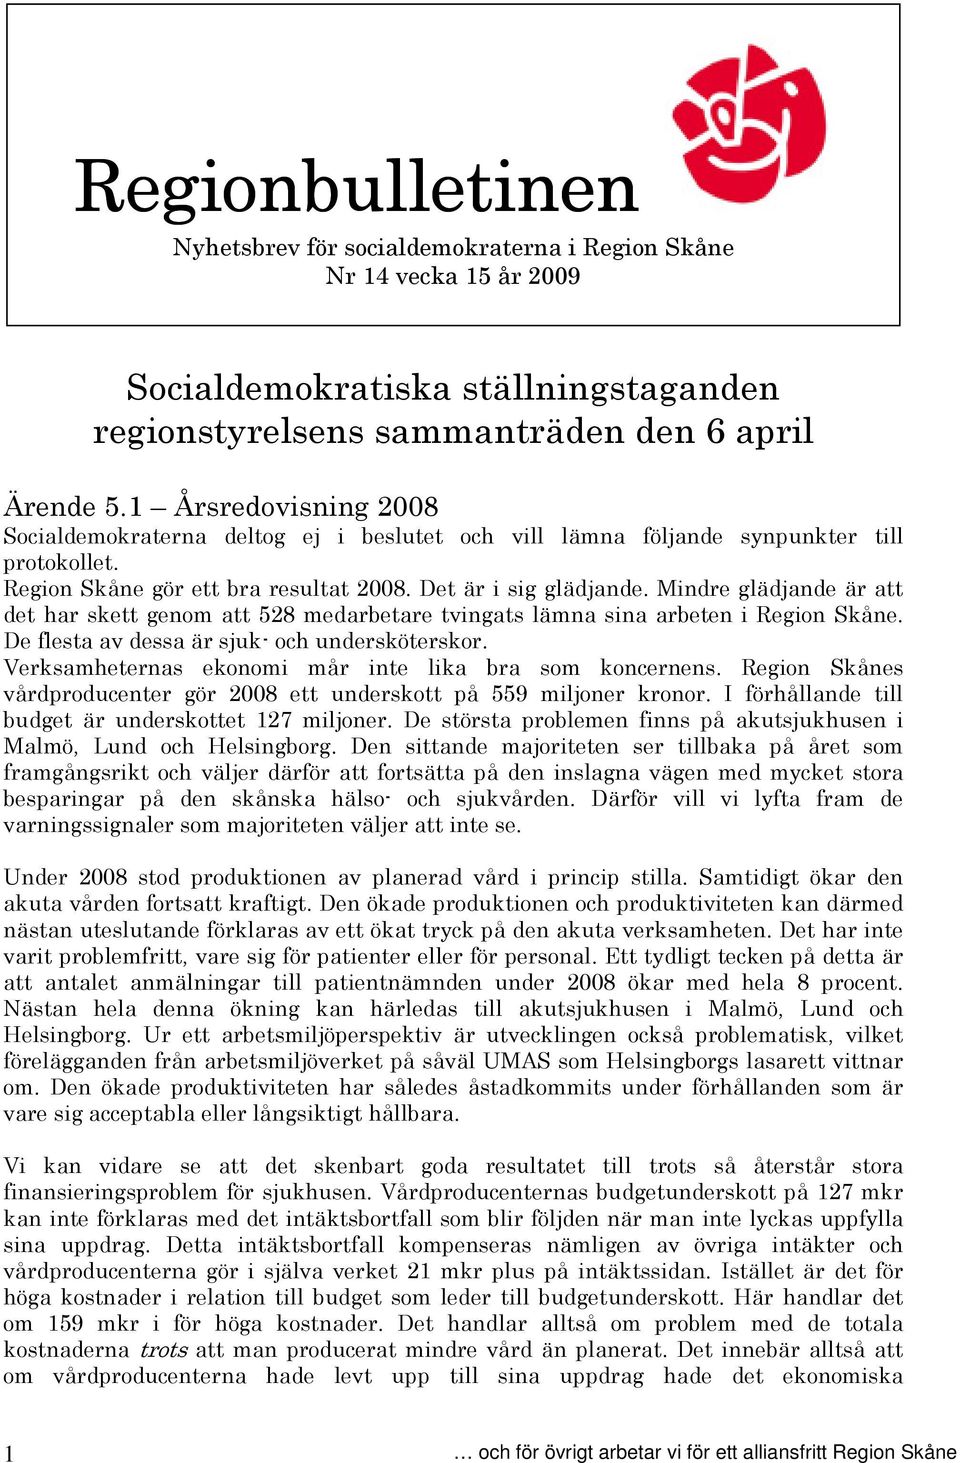 Mindre glädjande är att det har skett genom att 528 medarbetare tvingats lämna sina arbeten i Region Skåne. De flesta av dessa är sjuk- och undersköterskor.